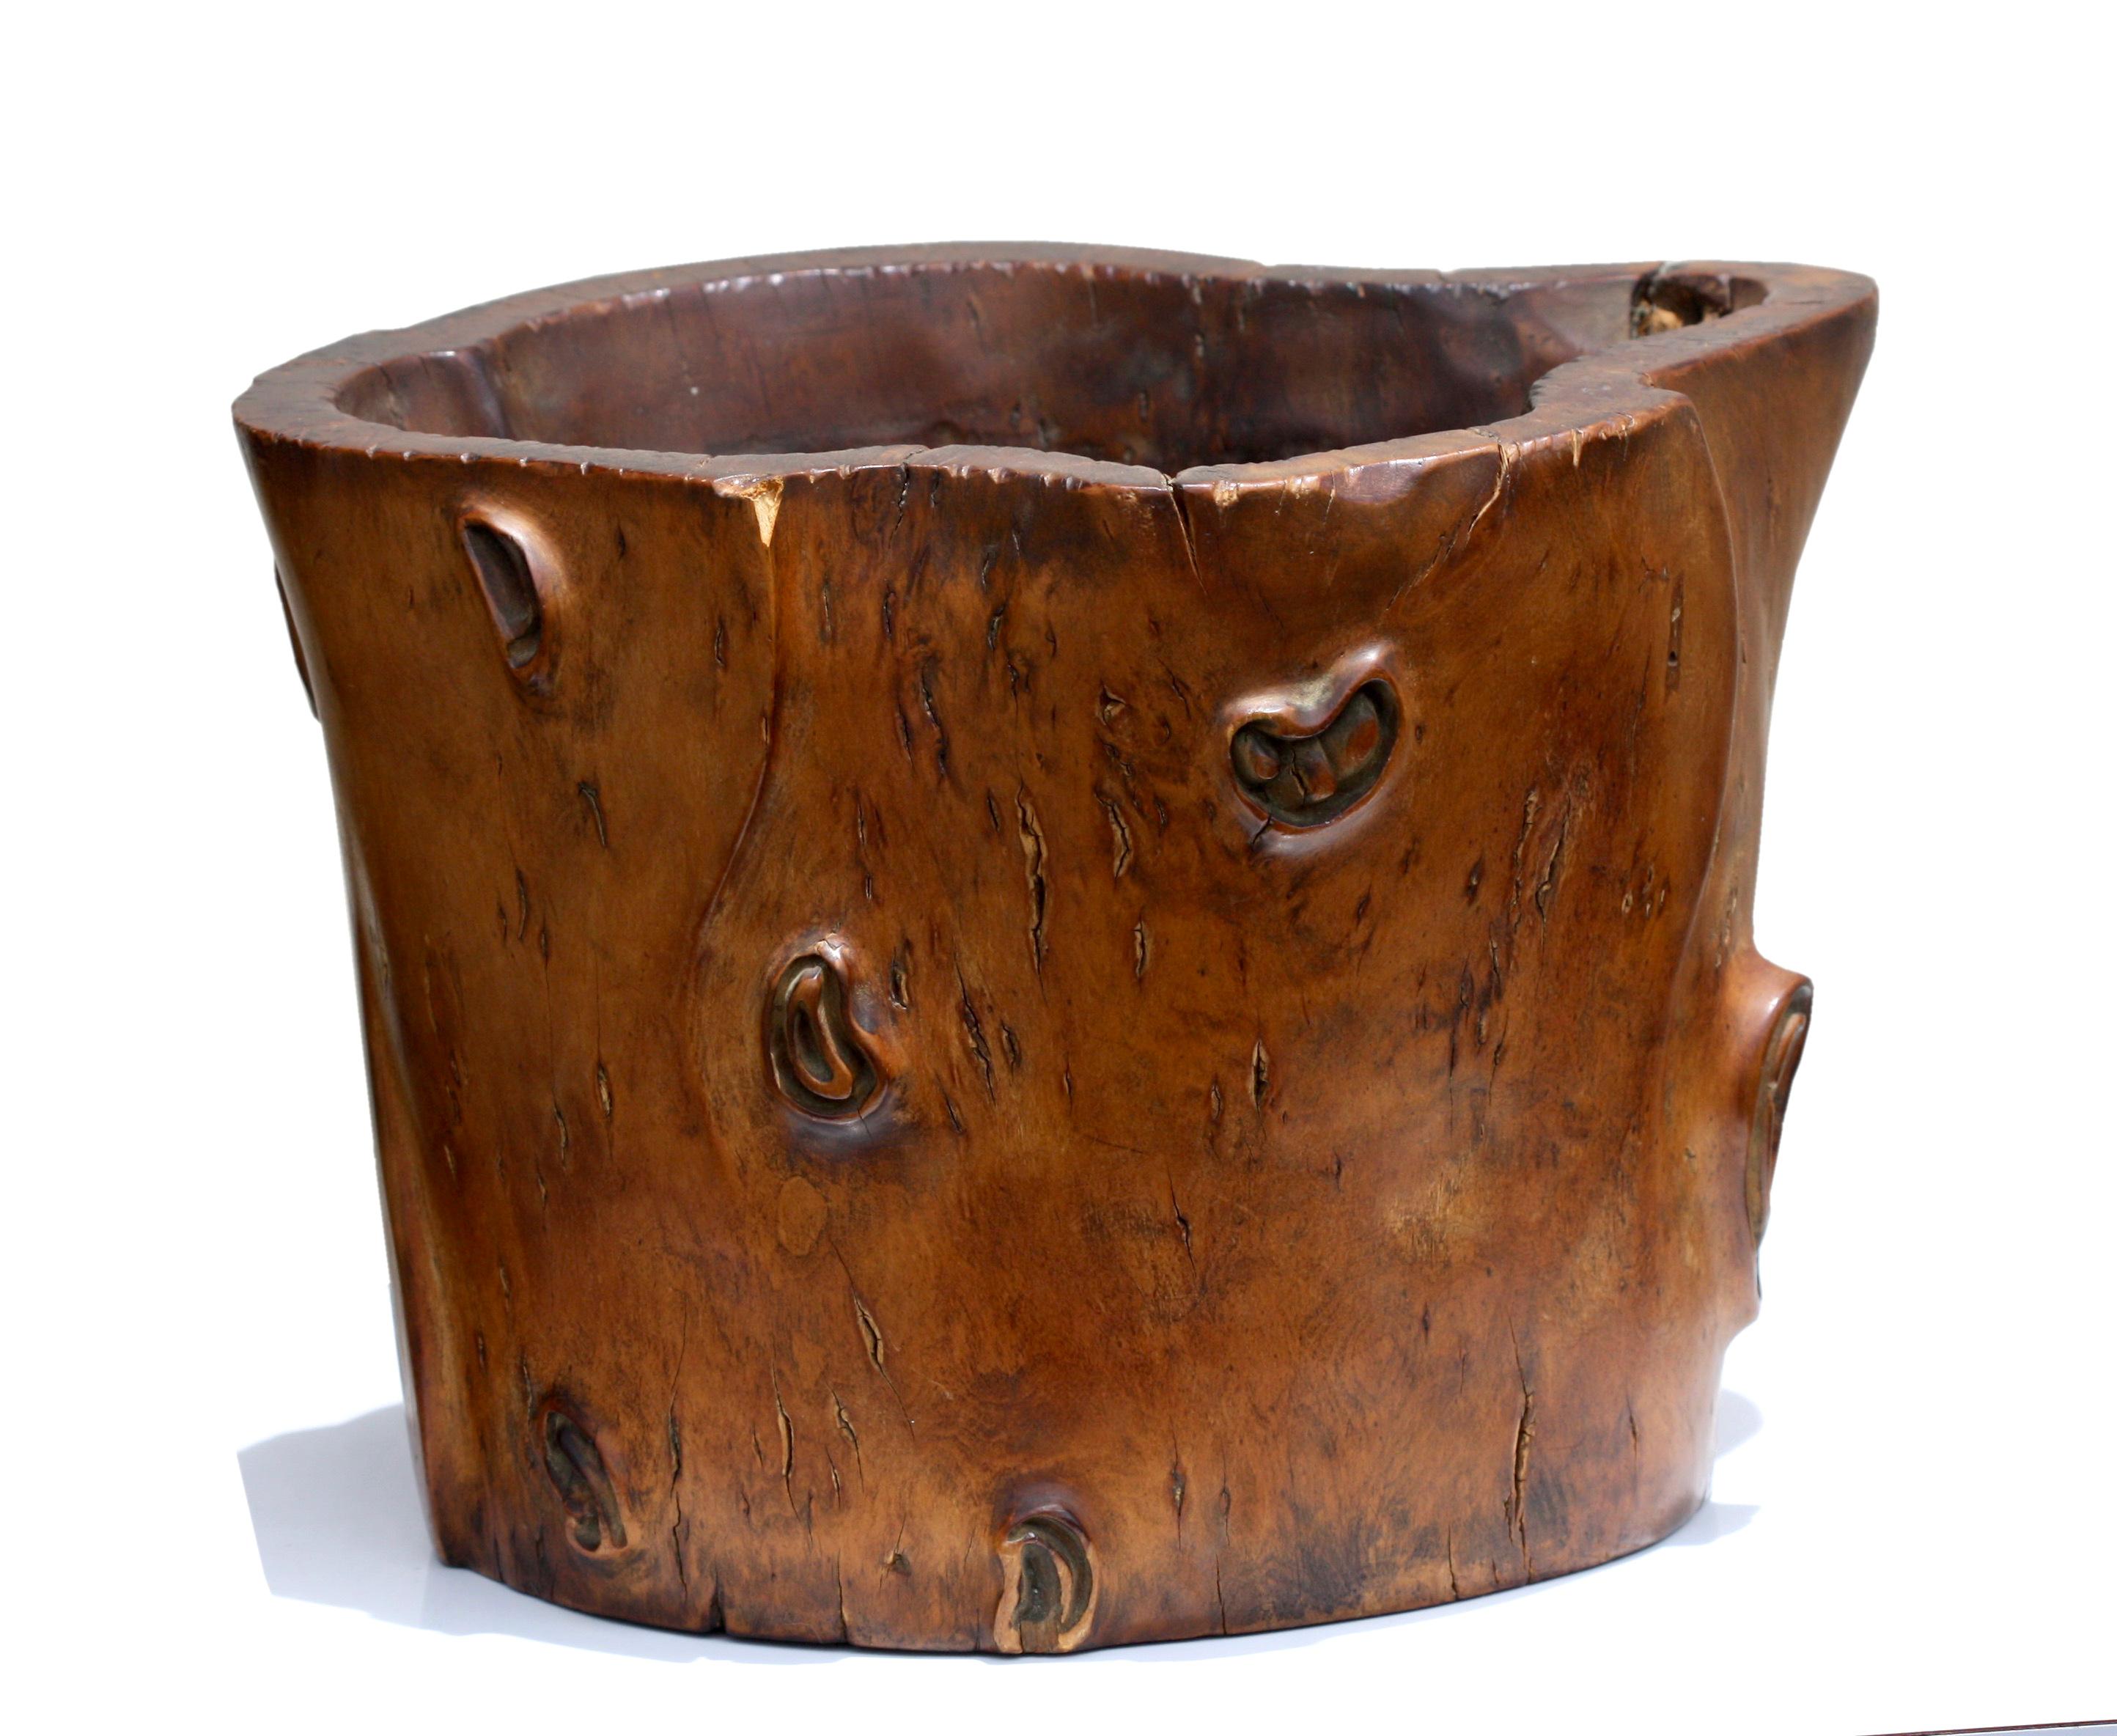 Pot à pinceau en bois de ronce, dynastie Qing
Chinois, fin du XIXe siècle, de forme cylindrique avec un rebord évasé, la surface bien patinée d'une chaude couleur brun caramel,
Mesures : 9.50 pouces de large, 7 pouces de haut.